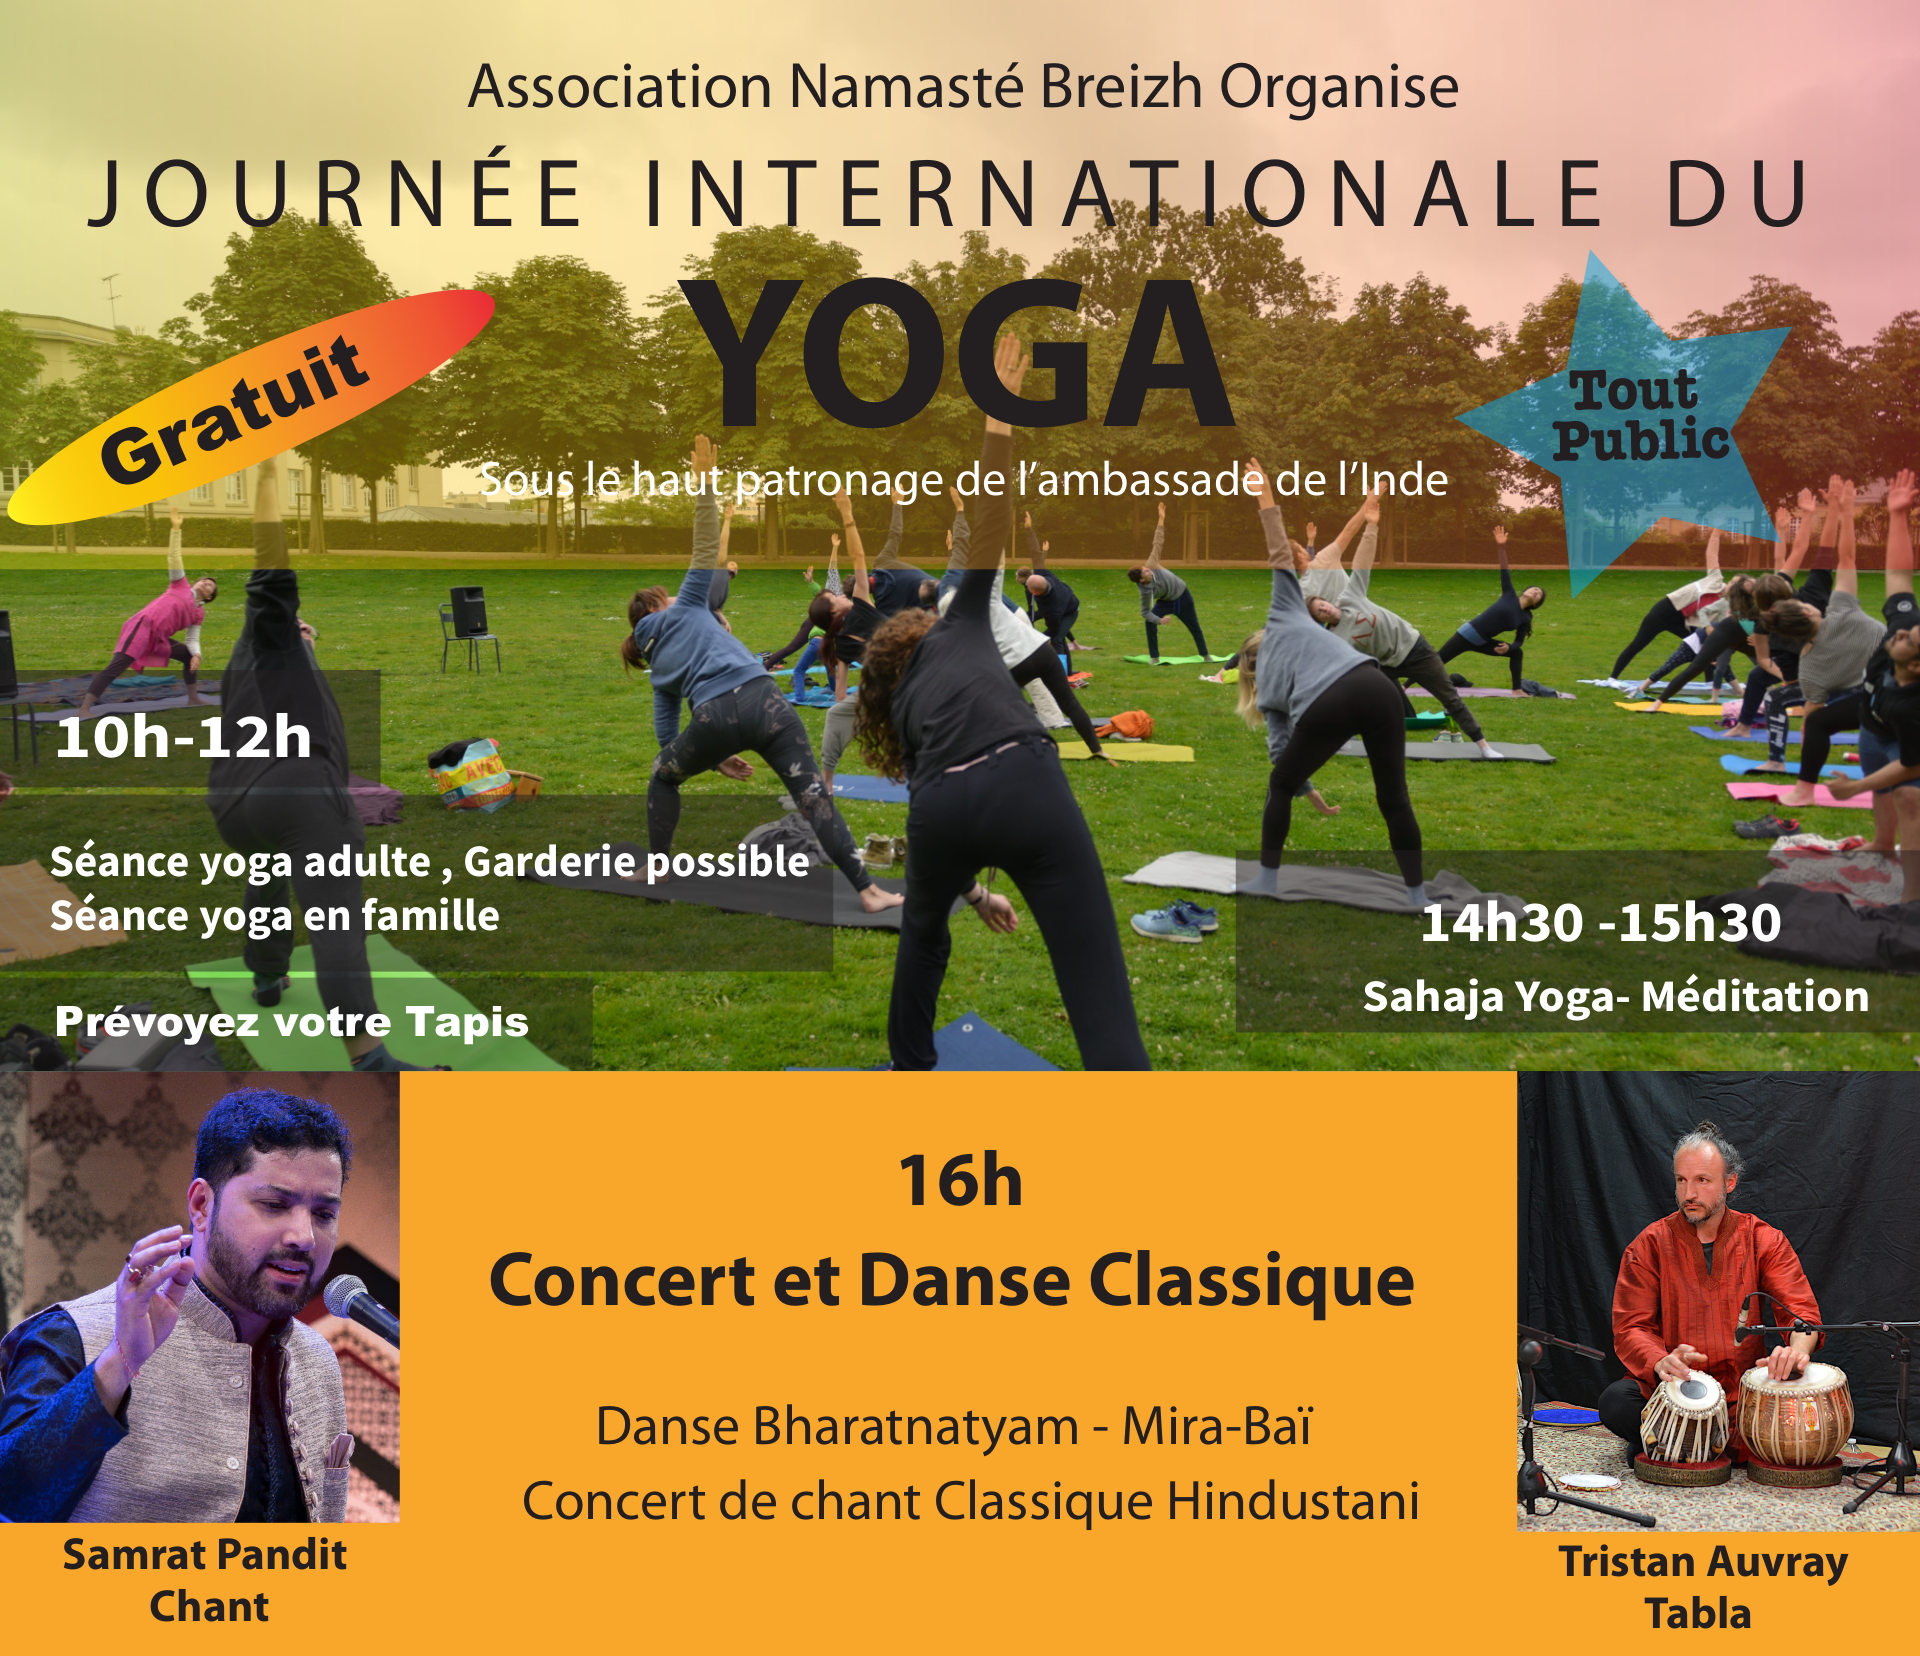 Journée internationale du Yoga : séance gratuites de Yoga et méditation, repas, spectacle danse Bharatanatyam et concert de chant classique hindustani